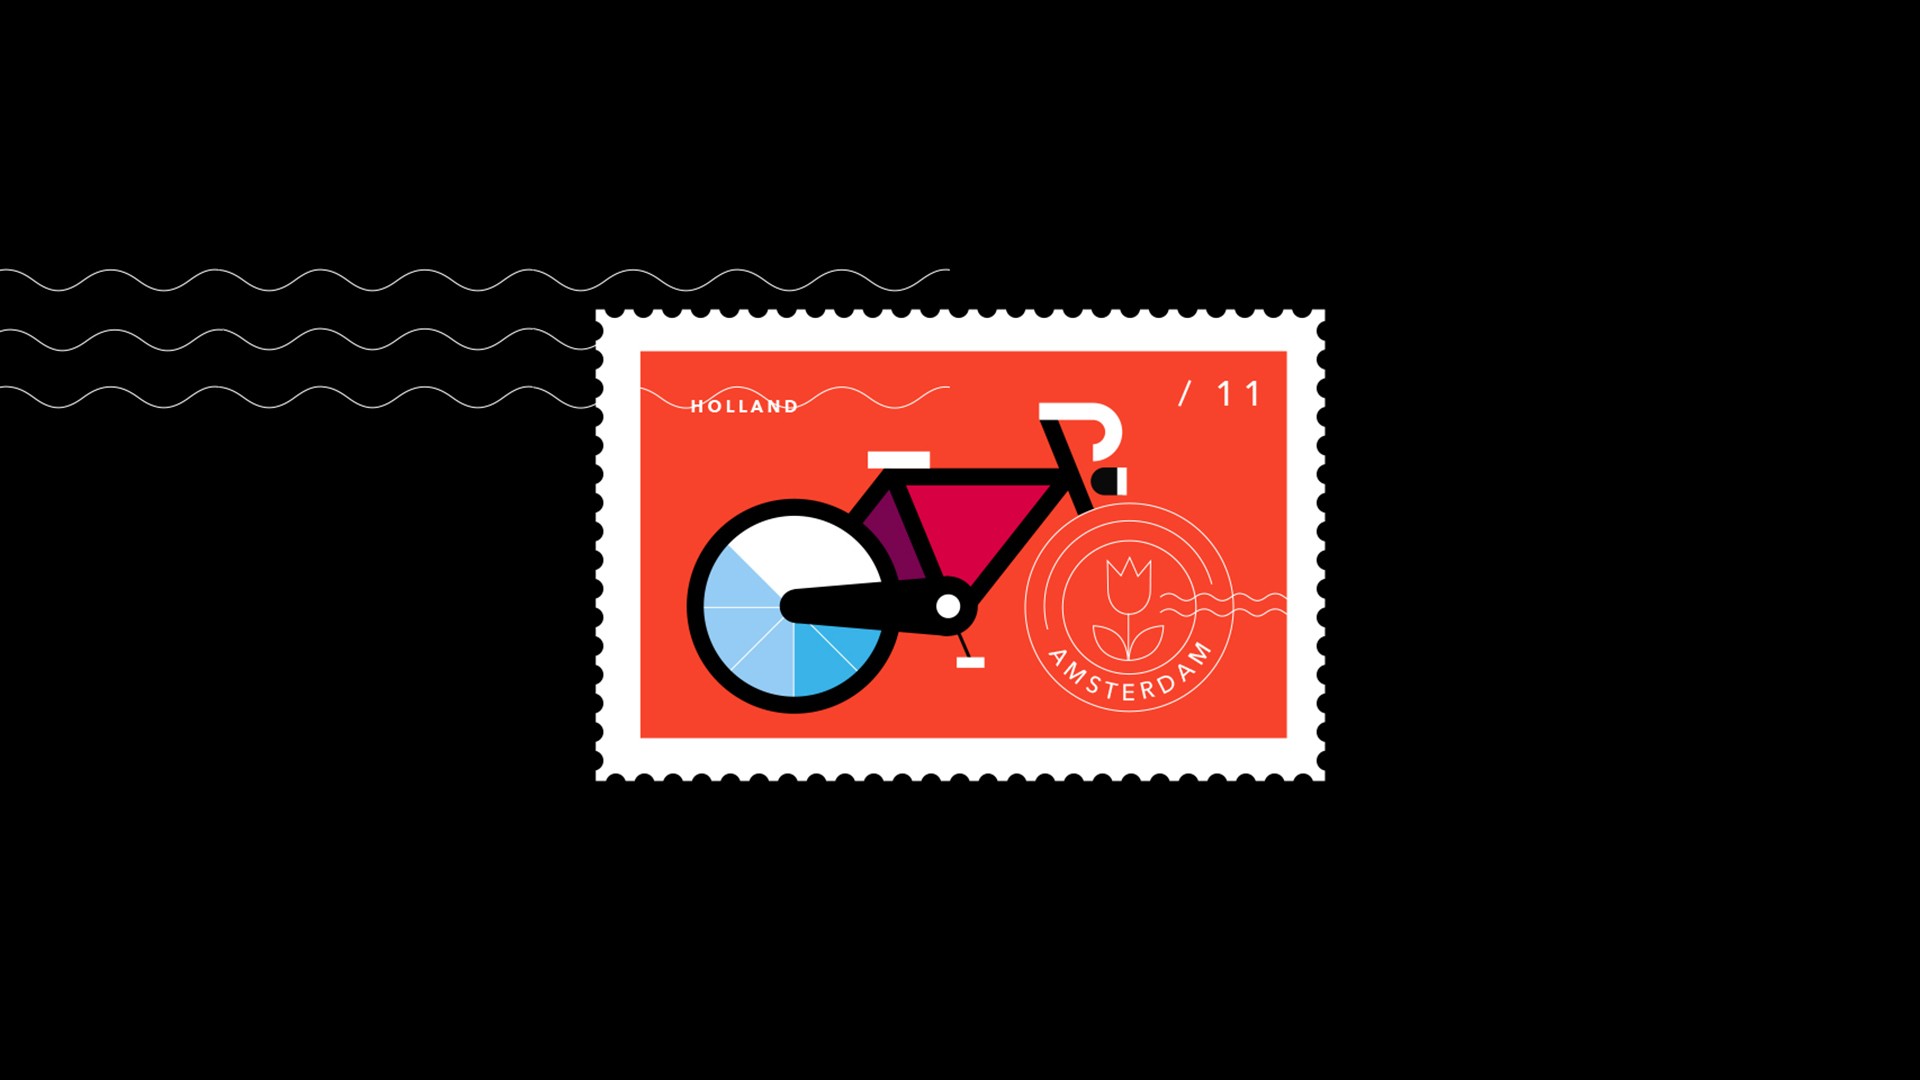 General 1920x1080 minimalism bicycle stamps numbers black black background orange vehicle artwork